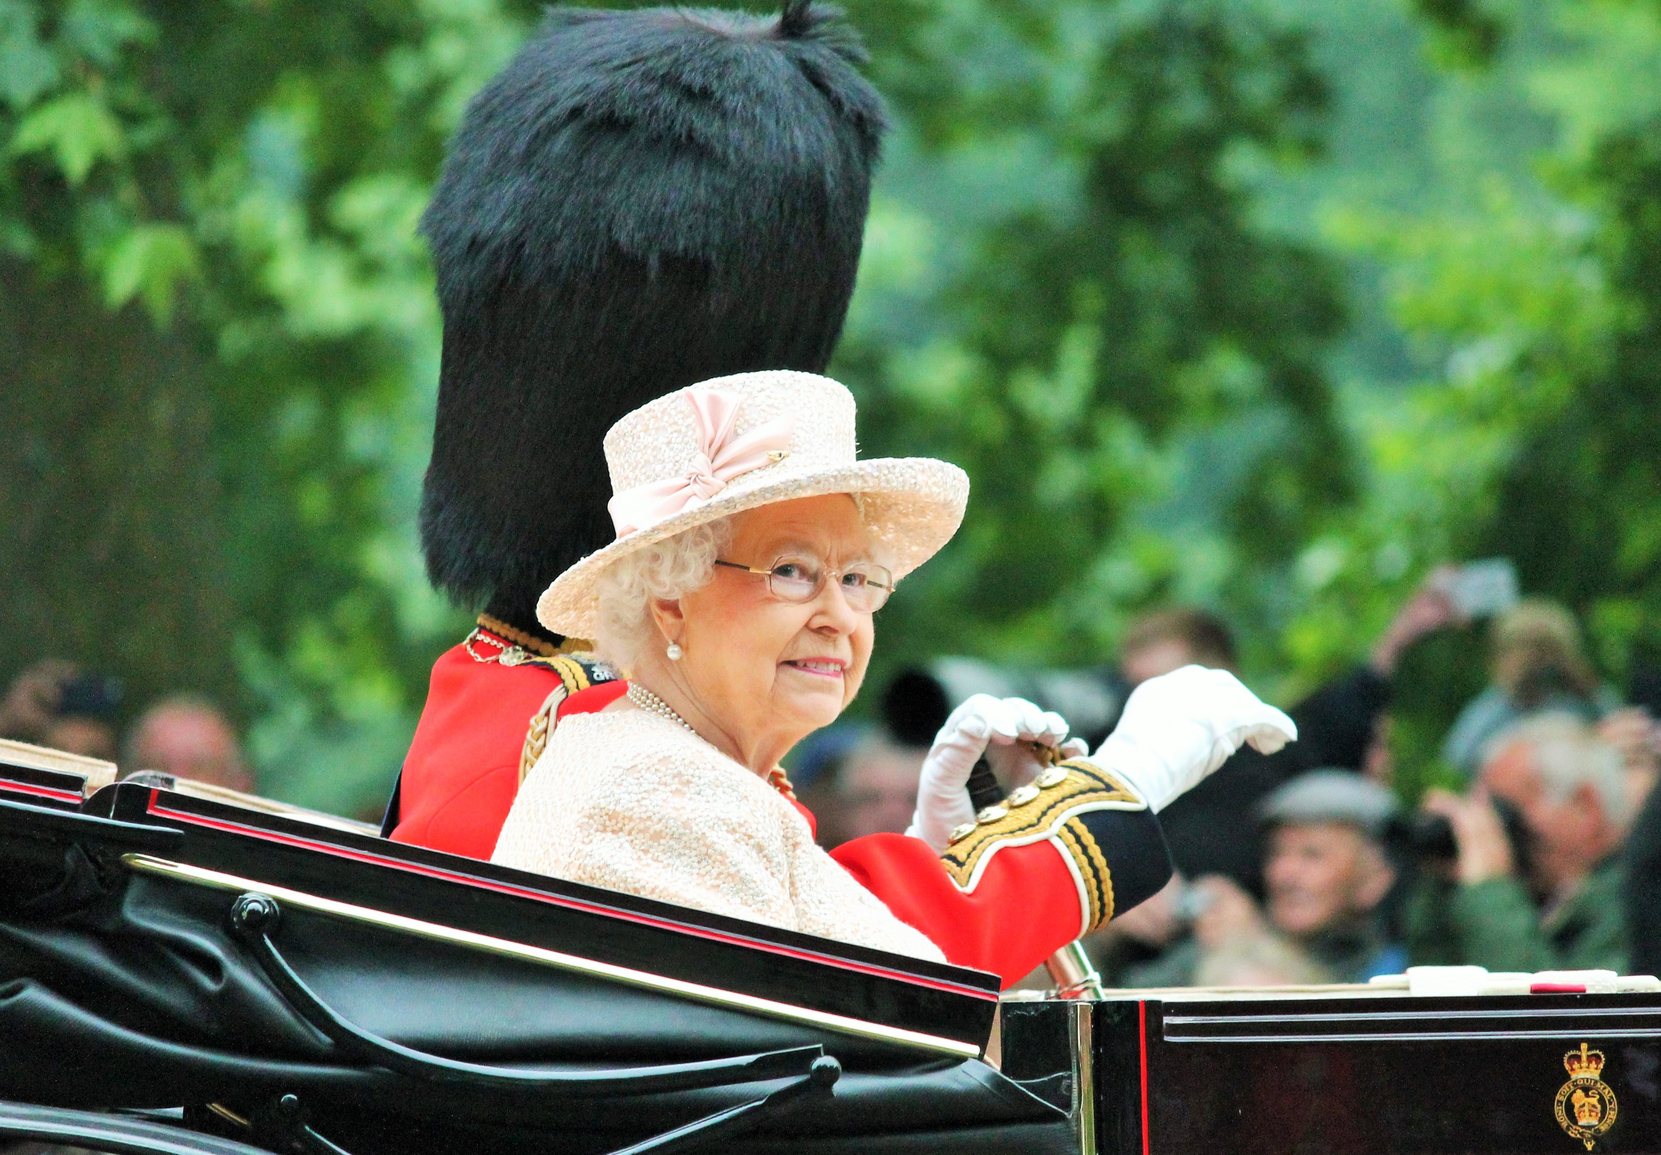 Regina Elisabetta II in carrozza